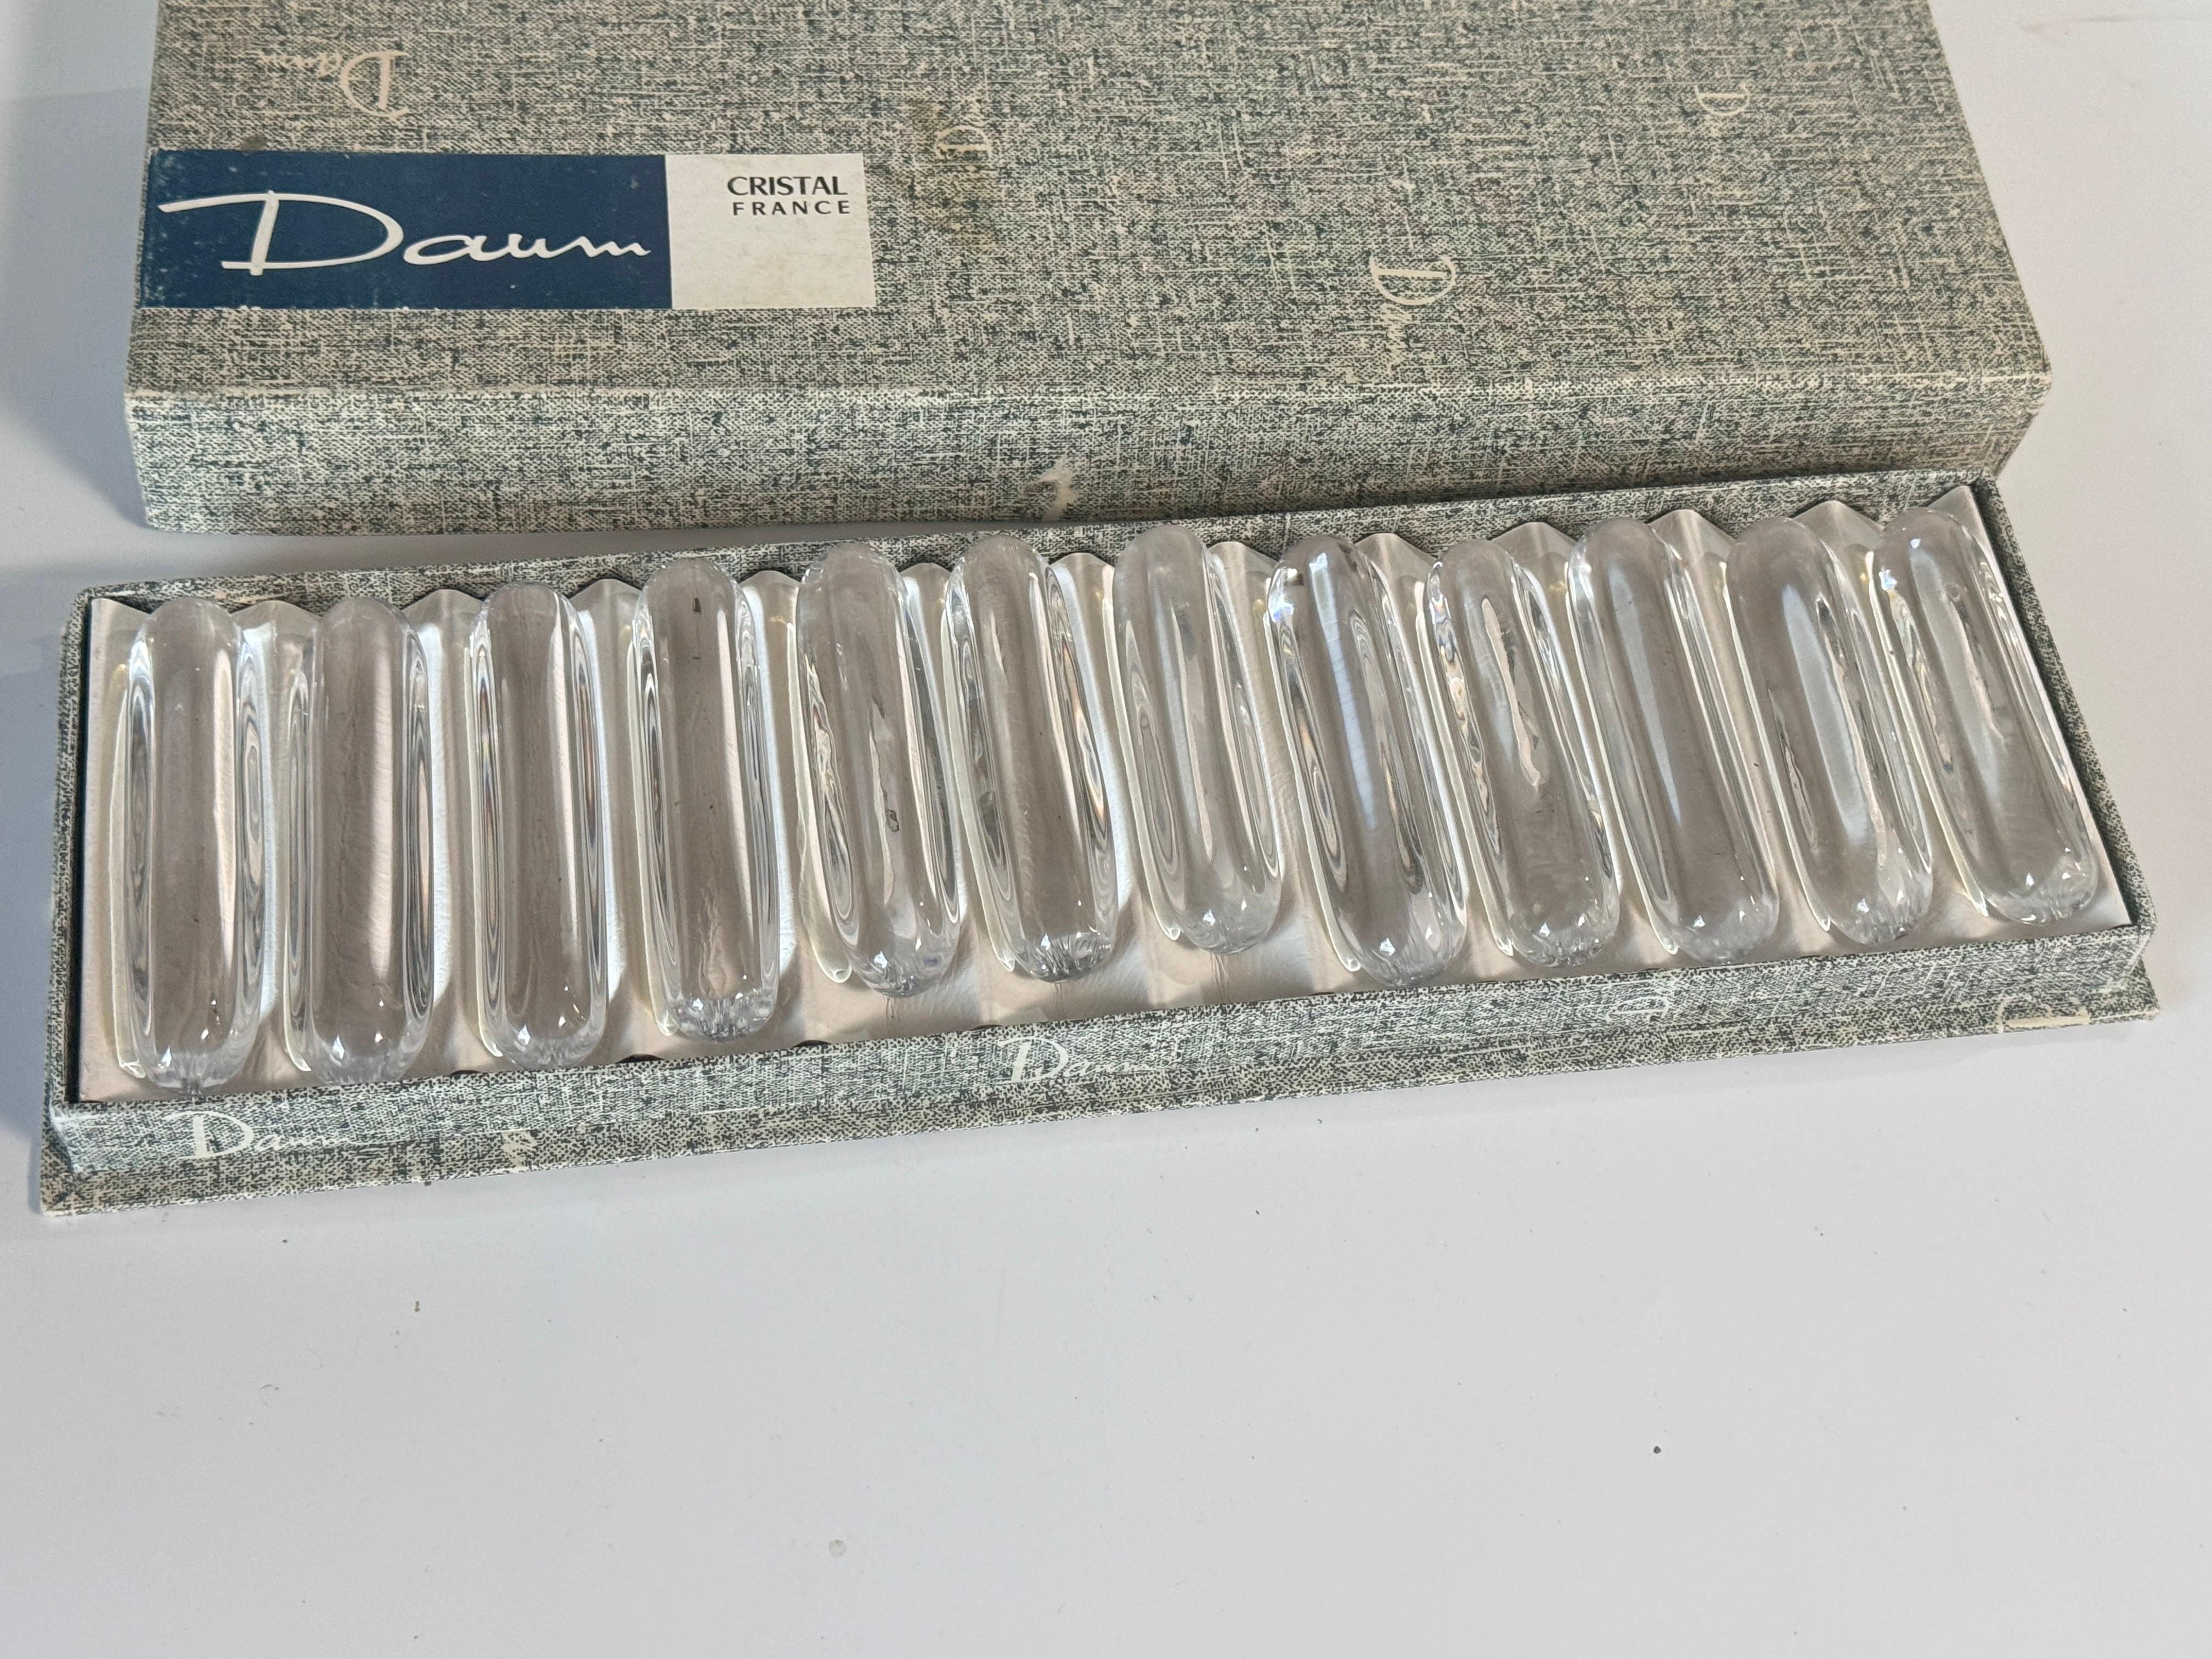 Magnifique ensemble de 12 porte-couteaux en cristal de la marque française Daum Nancy. Les porte-couteaux ont un design élégant et simple, qui met magnifiquement en valeur la qualité du cristal. On dirait presque des gouttes d'eau, tant le cristal